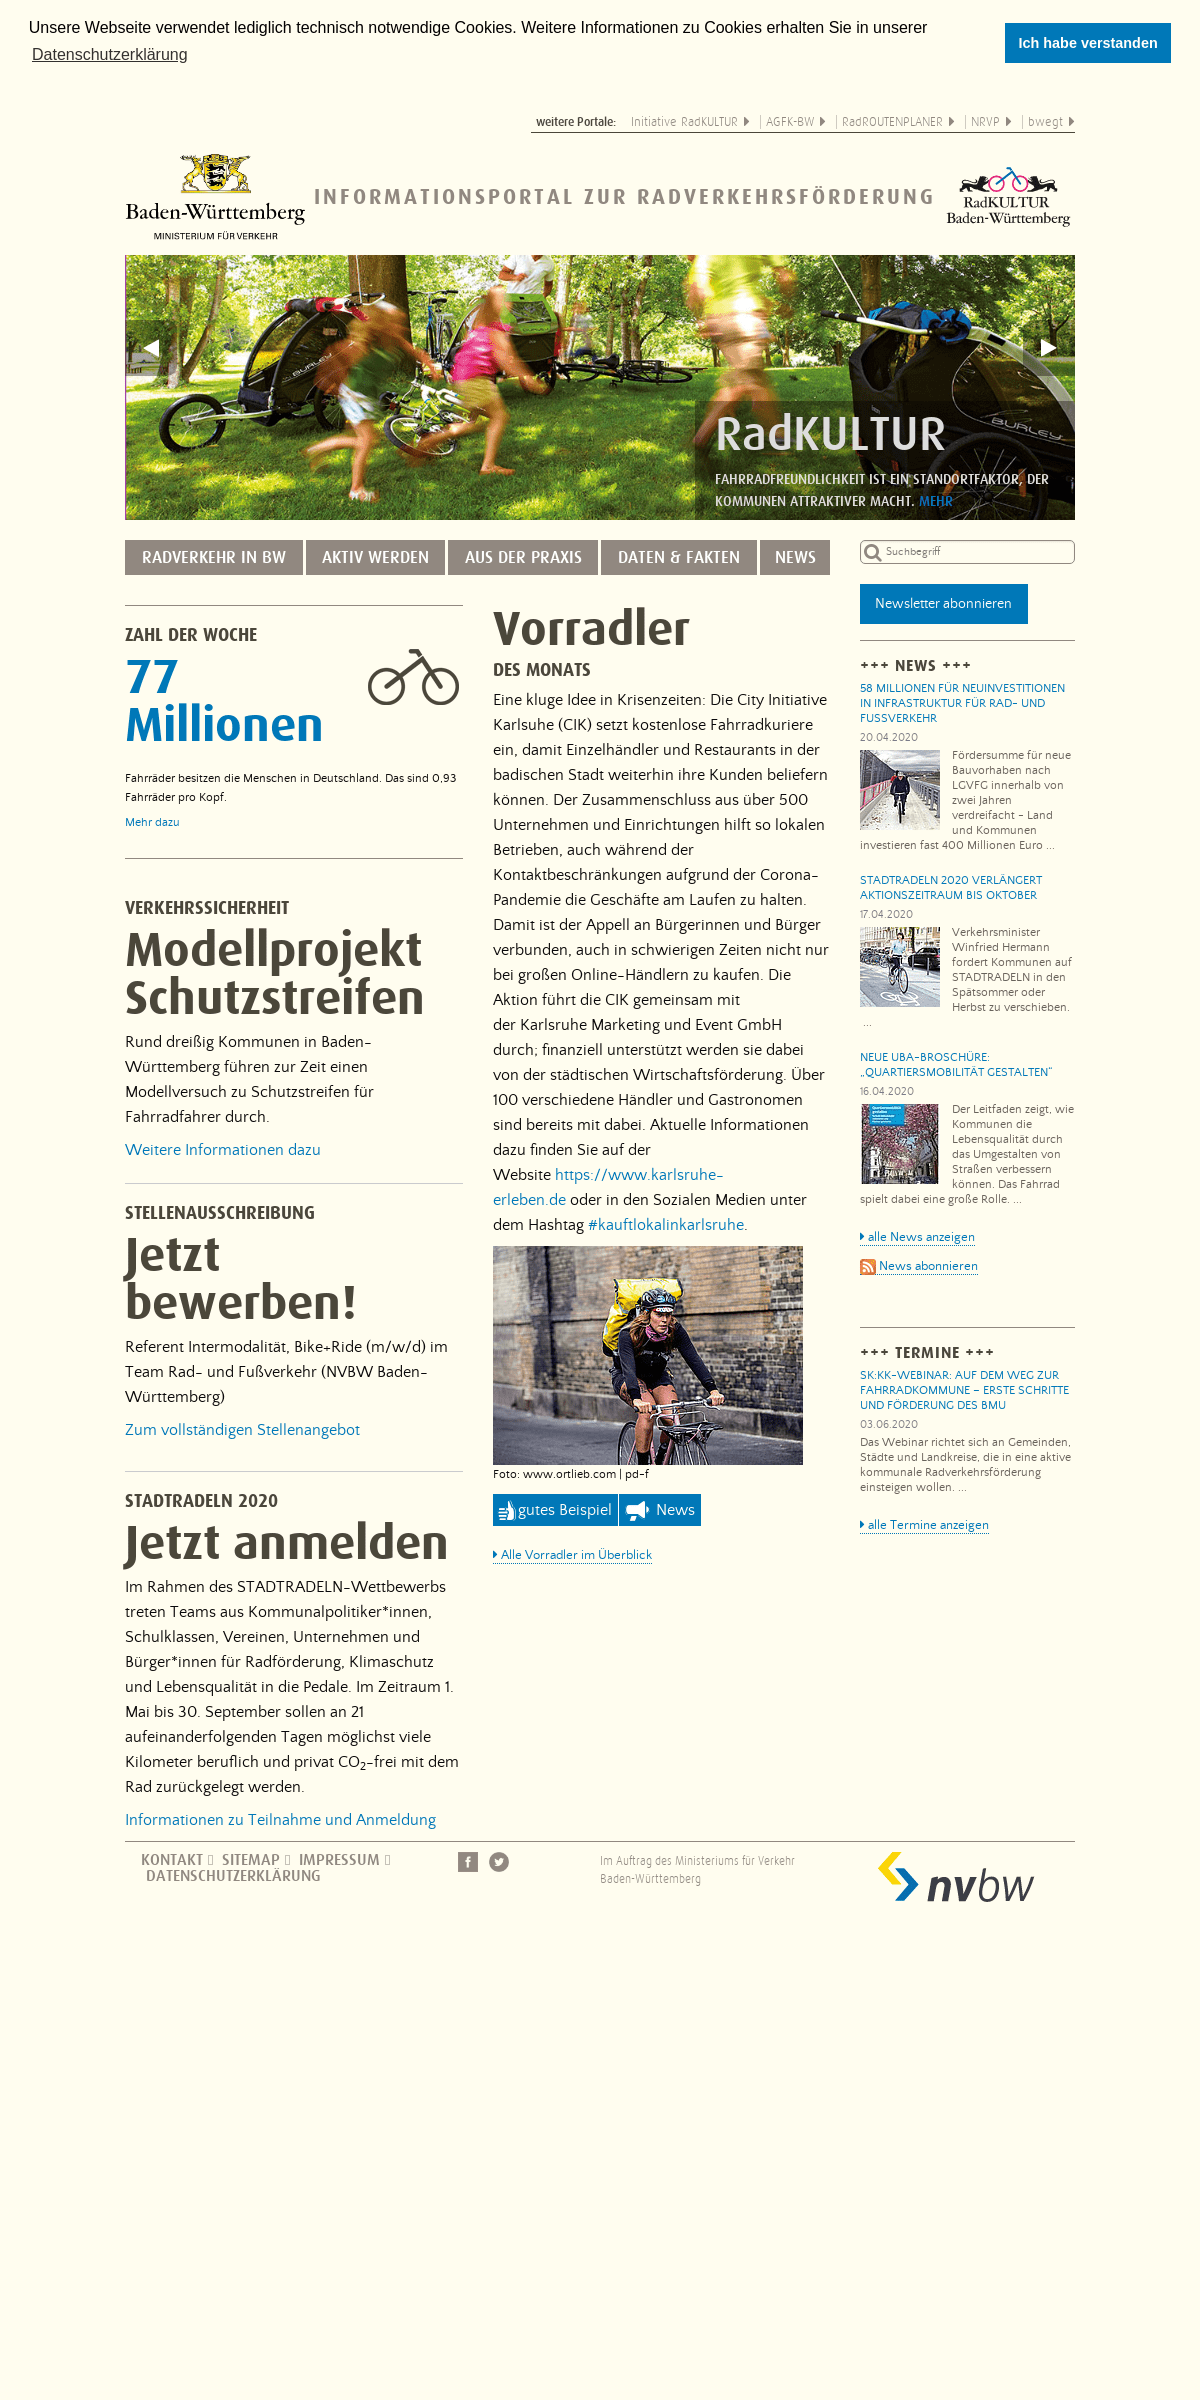 A complete backup of fahrradland-bw.de